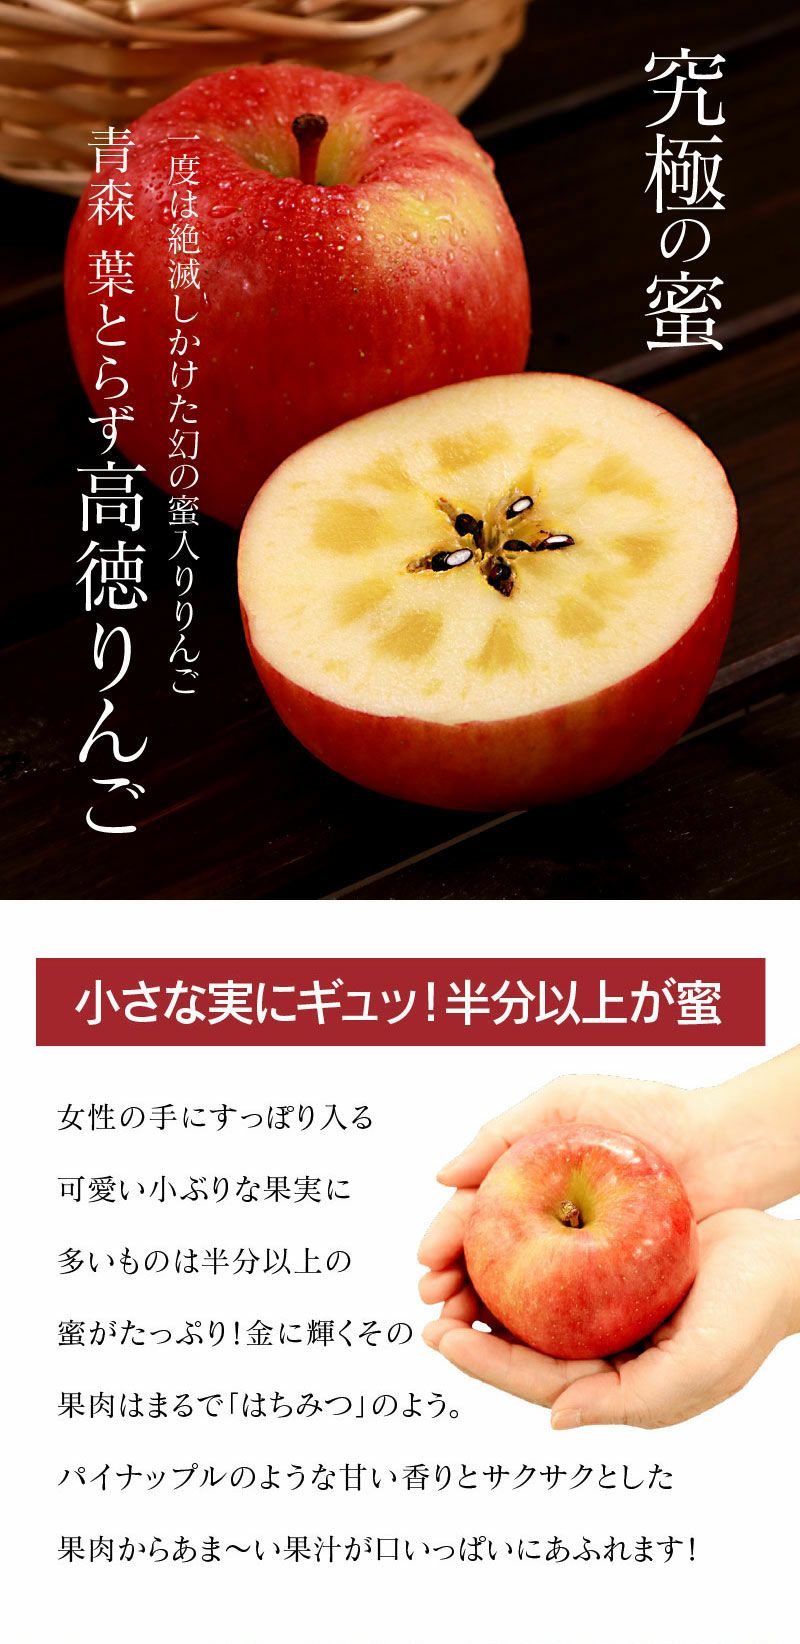 りんご様専用 | www.complejoloscipreses.com.ar